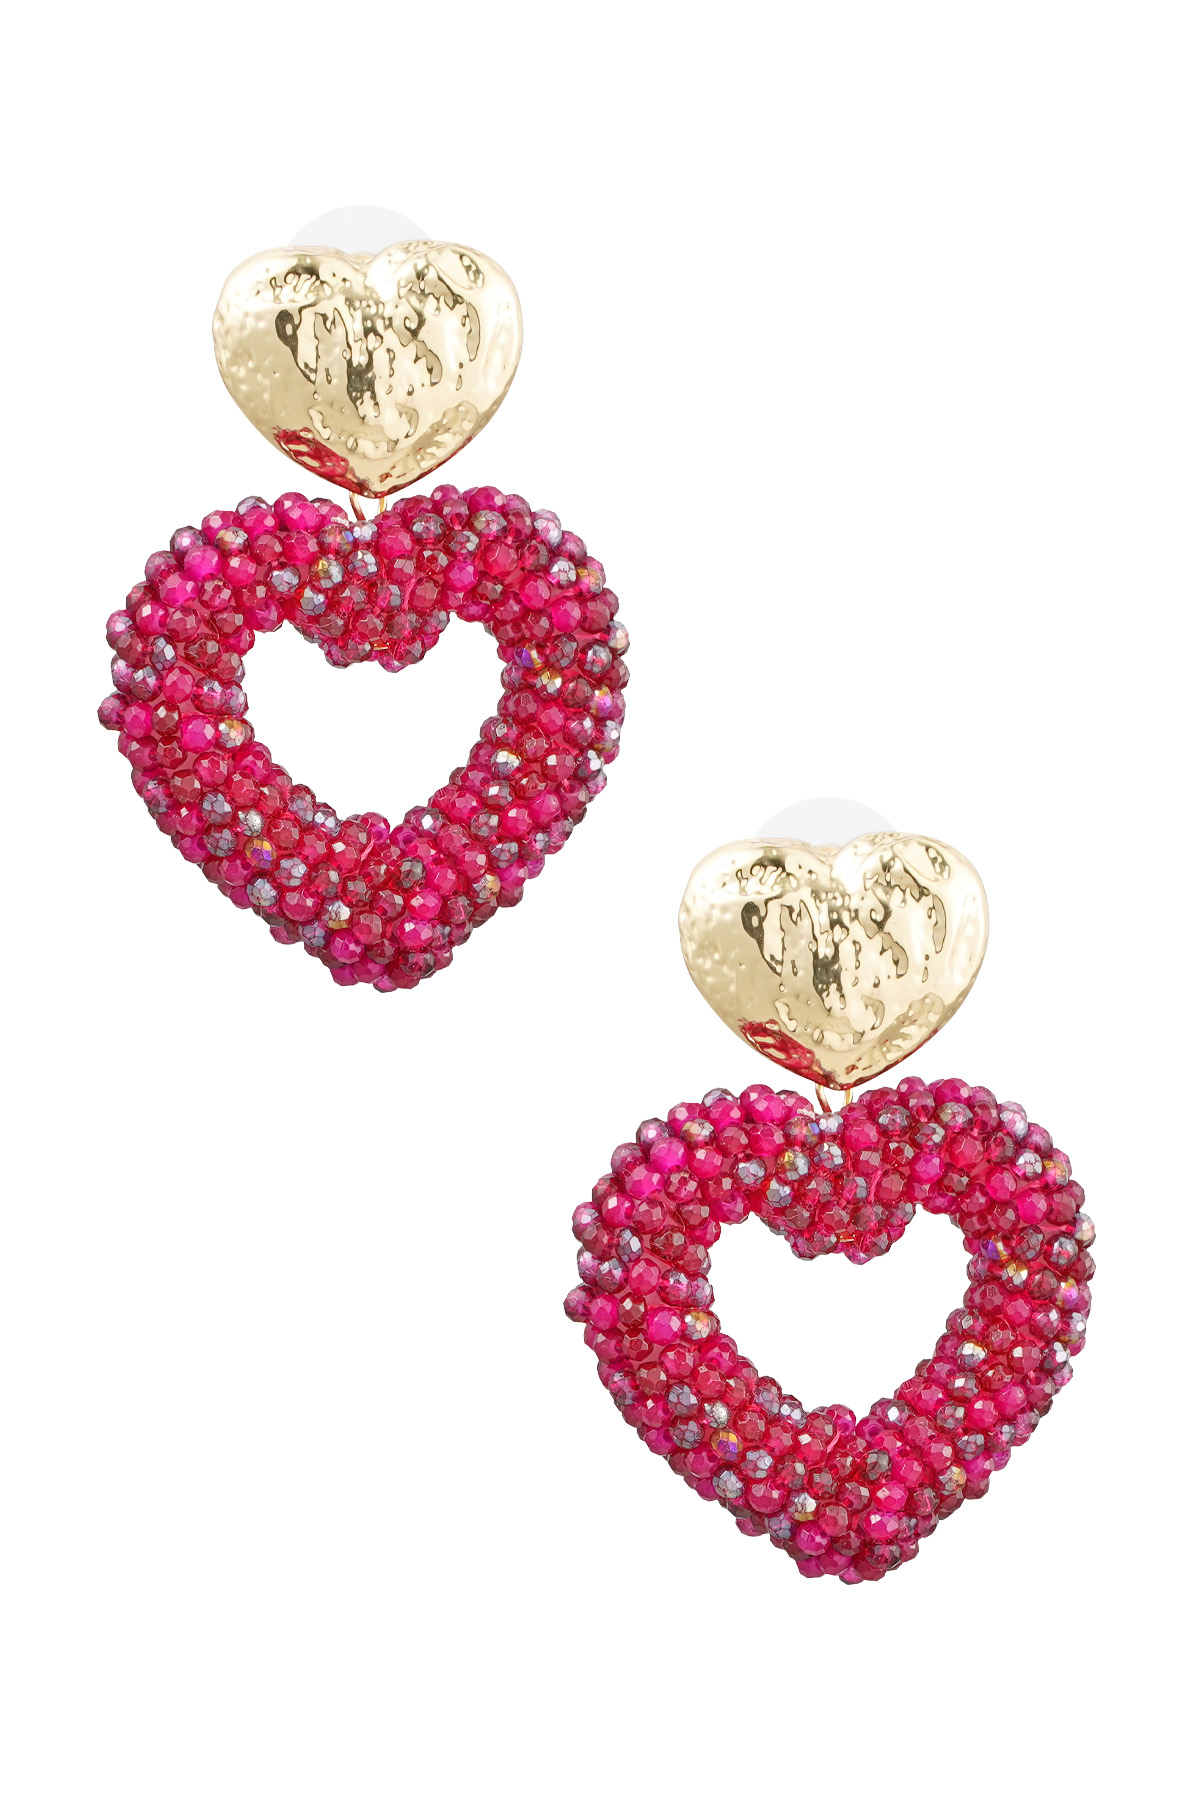 Ohrringe Herz aus Perlen - Gold/Rosa